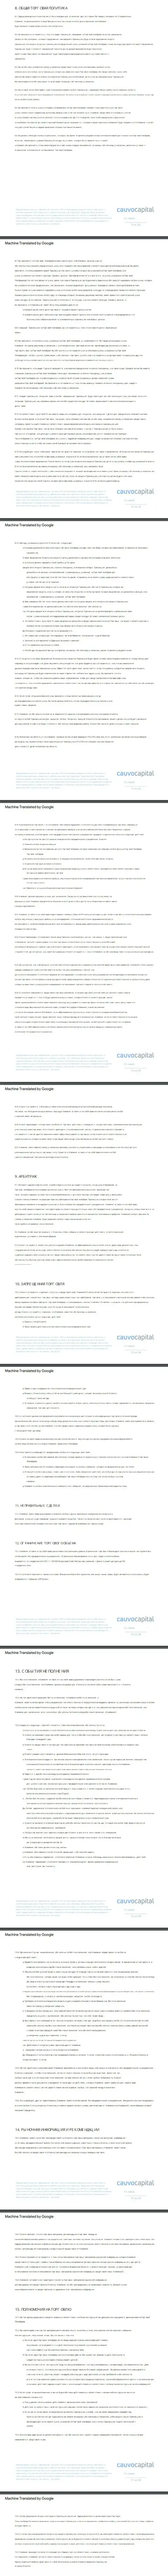 Часть 2 соглашения дилера Cauvo Capital